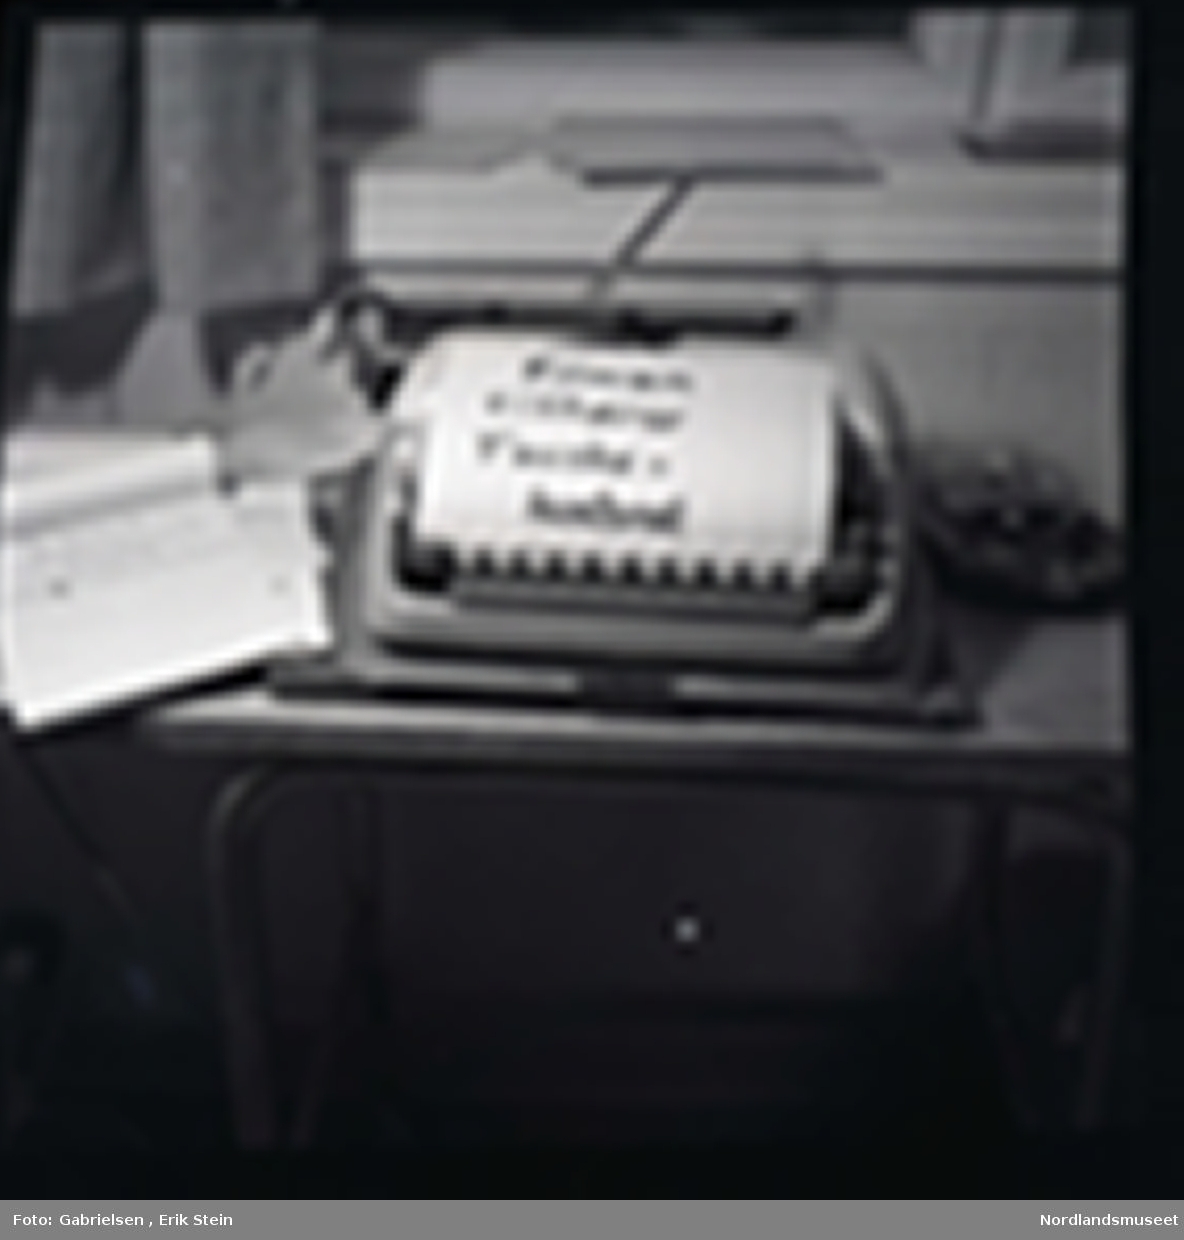 Fotografi av en gammel skrivemaskin 
som står på en pult inne i et kontor under en vindu med noen gardiner som det ligger en lapp på som står filmen tilhører 
Fauskekontoret og det ligger noen papirblokker
vedsiden av skrivemaskinen og man ser noen
mapper som ligger på vinduskarmen i kontoret 
og man ser en ovn under pulten i kontoret